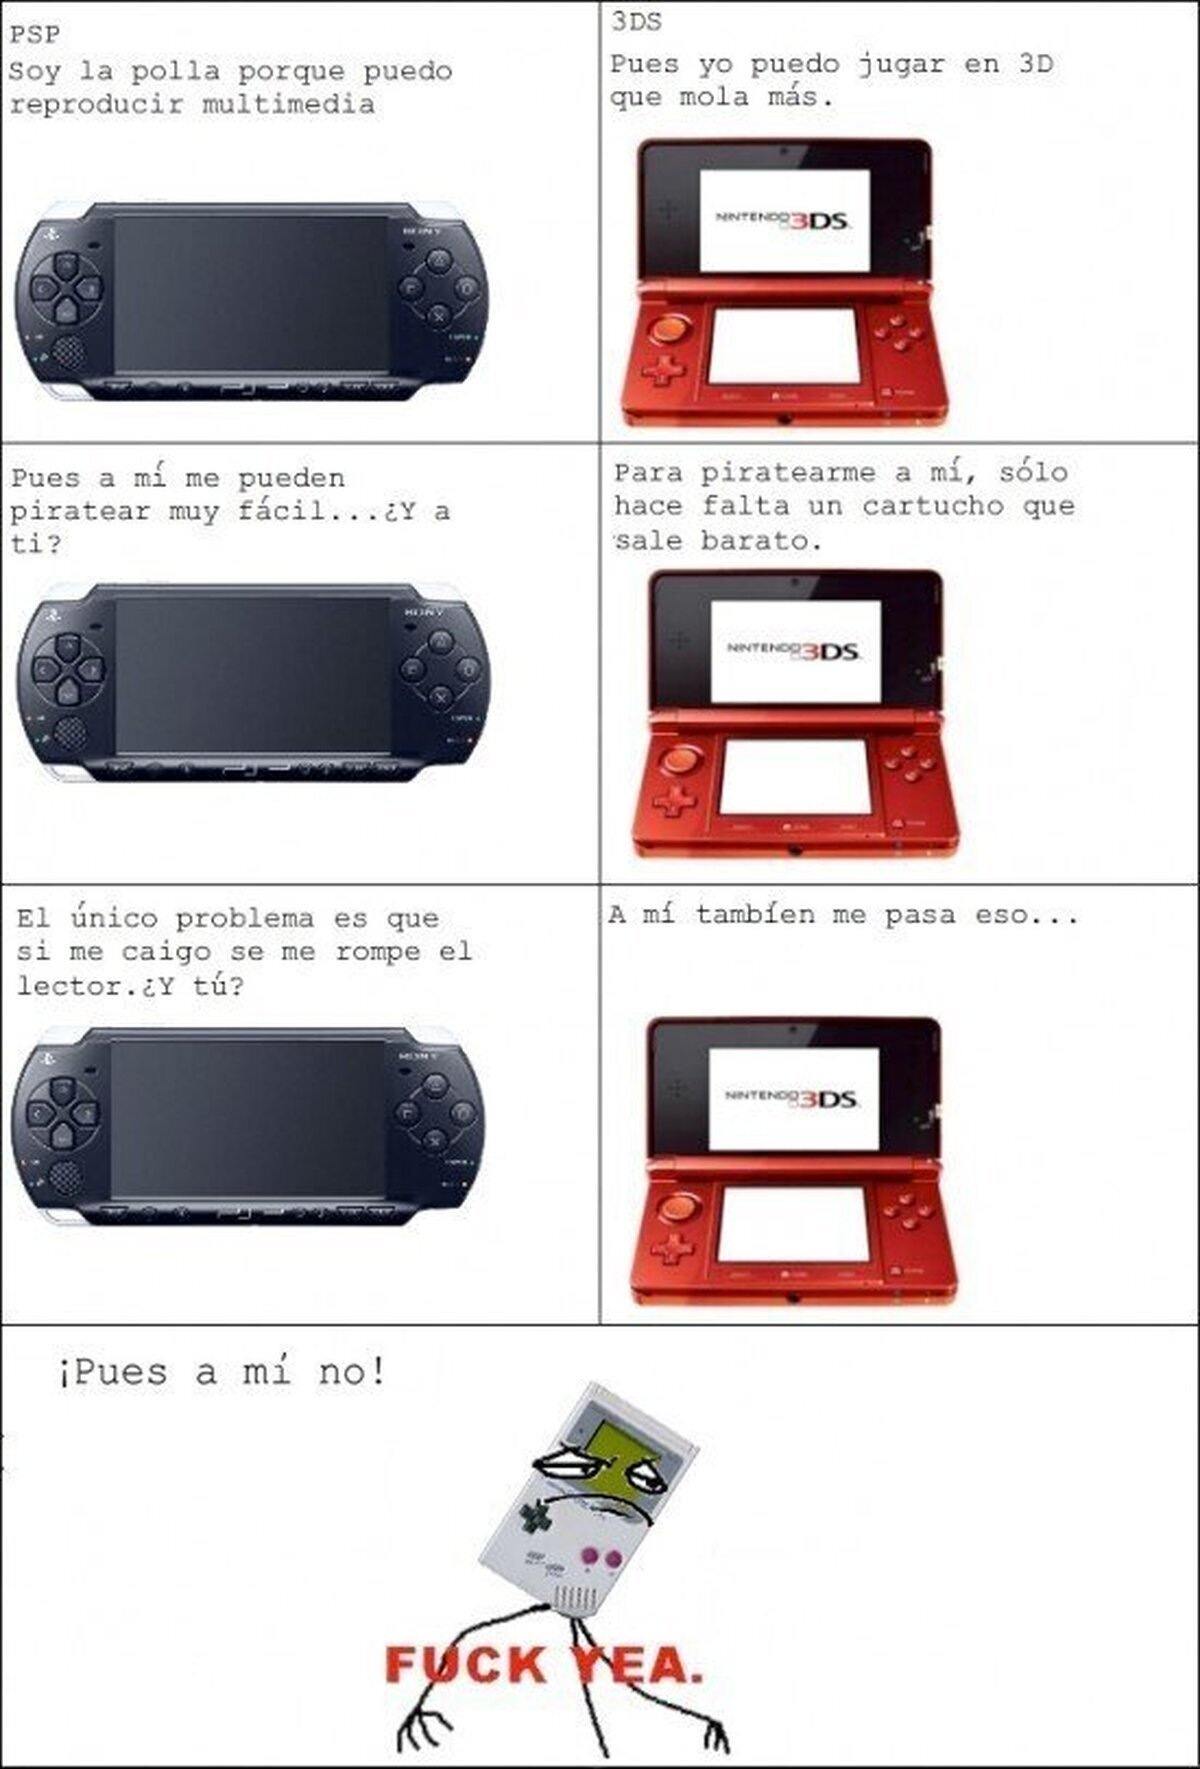 PSP vs 3DS